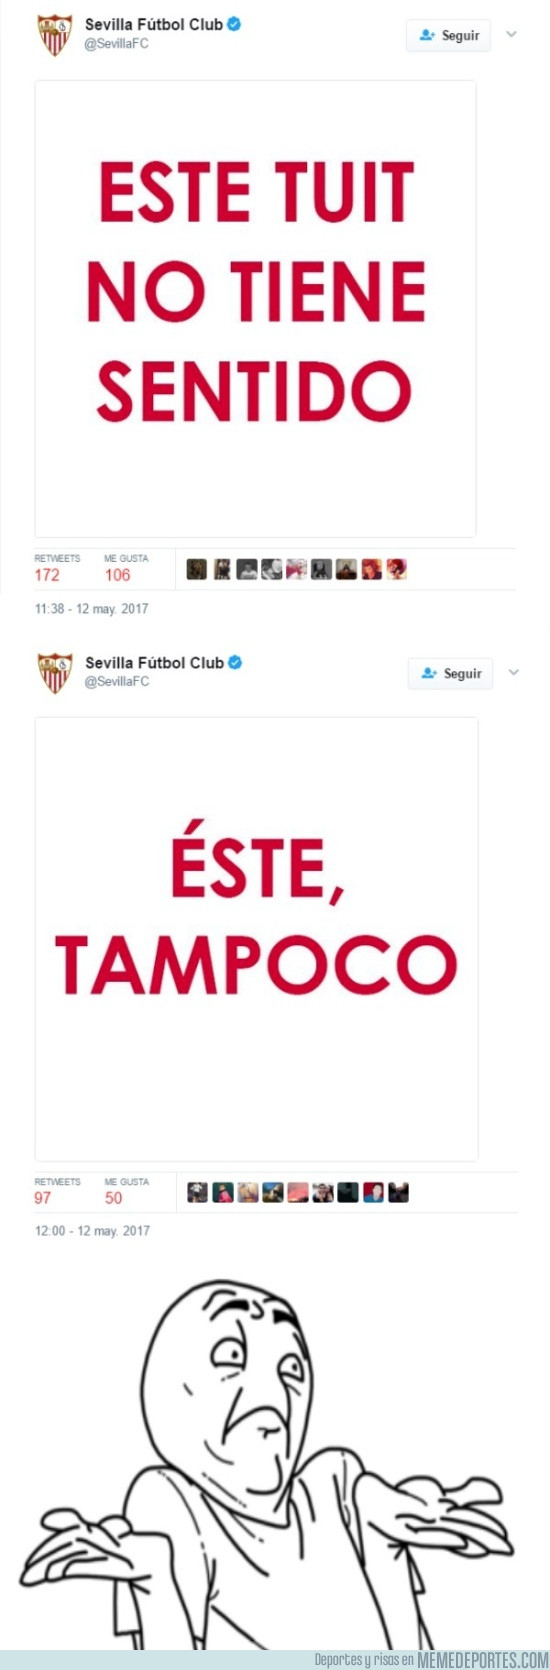 974772 - ¿Qué quieren decir estos tweets del Sevilla?